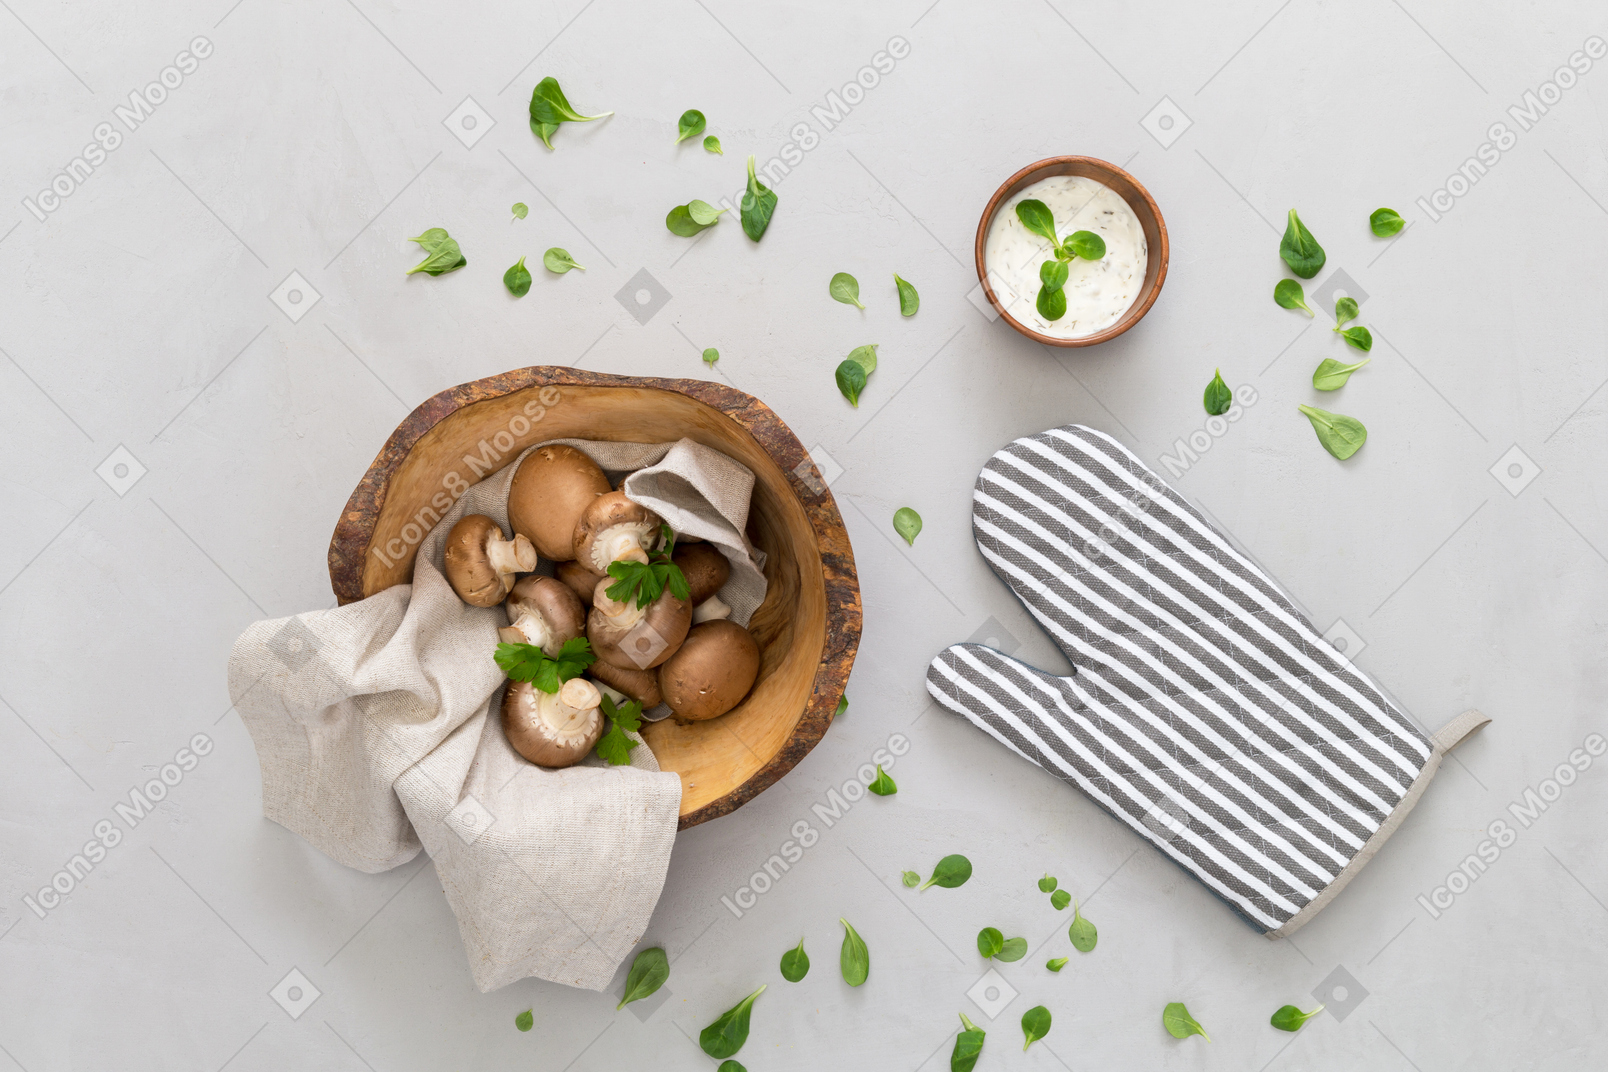 Any idea of mushrooms based dish?